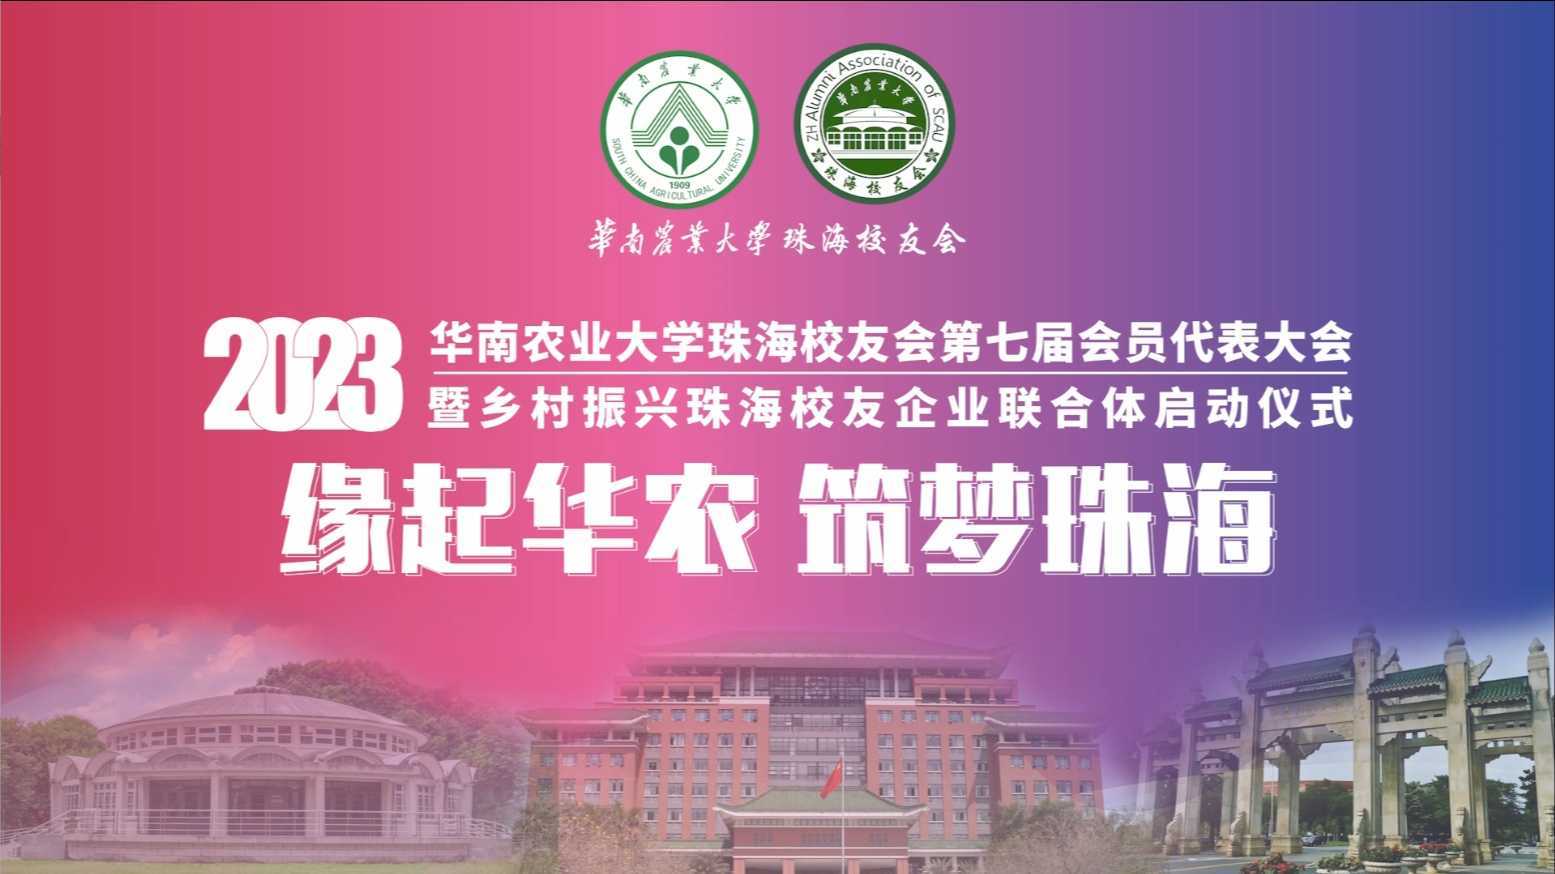 华南农业大学珠海校友会第七届会员代表大会花絮